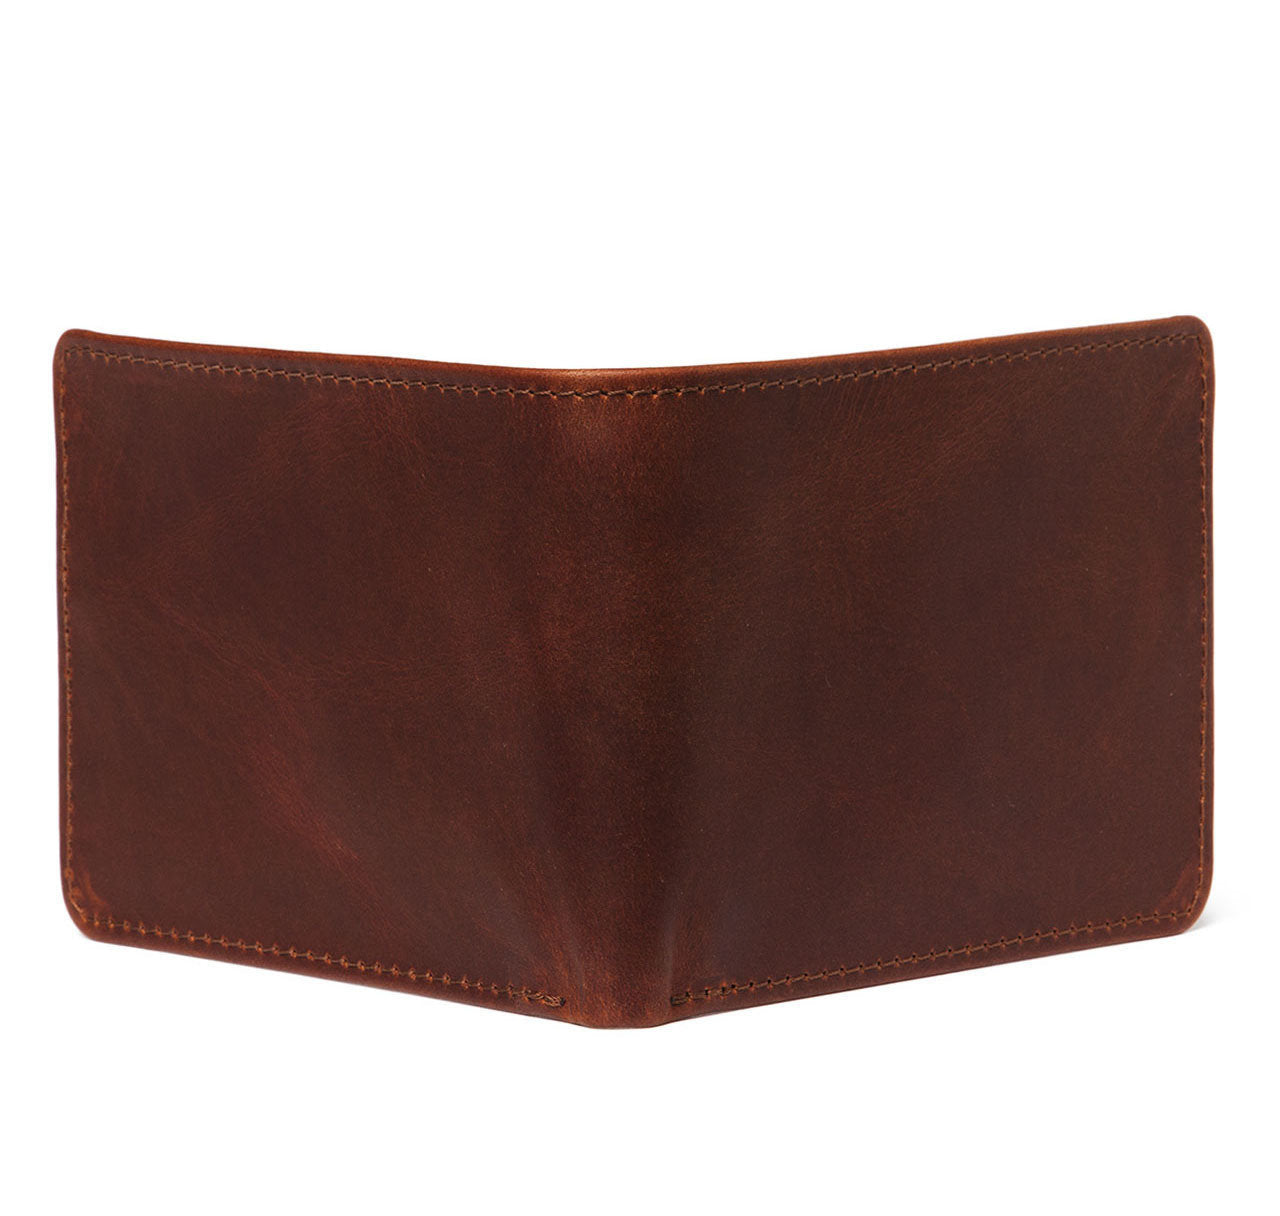 Havana Leather Billfold Wallet